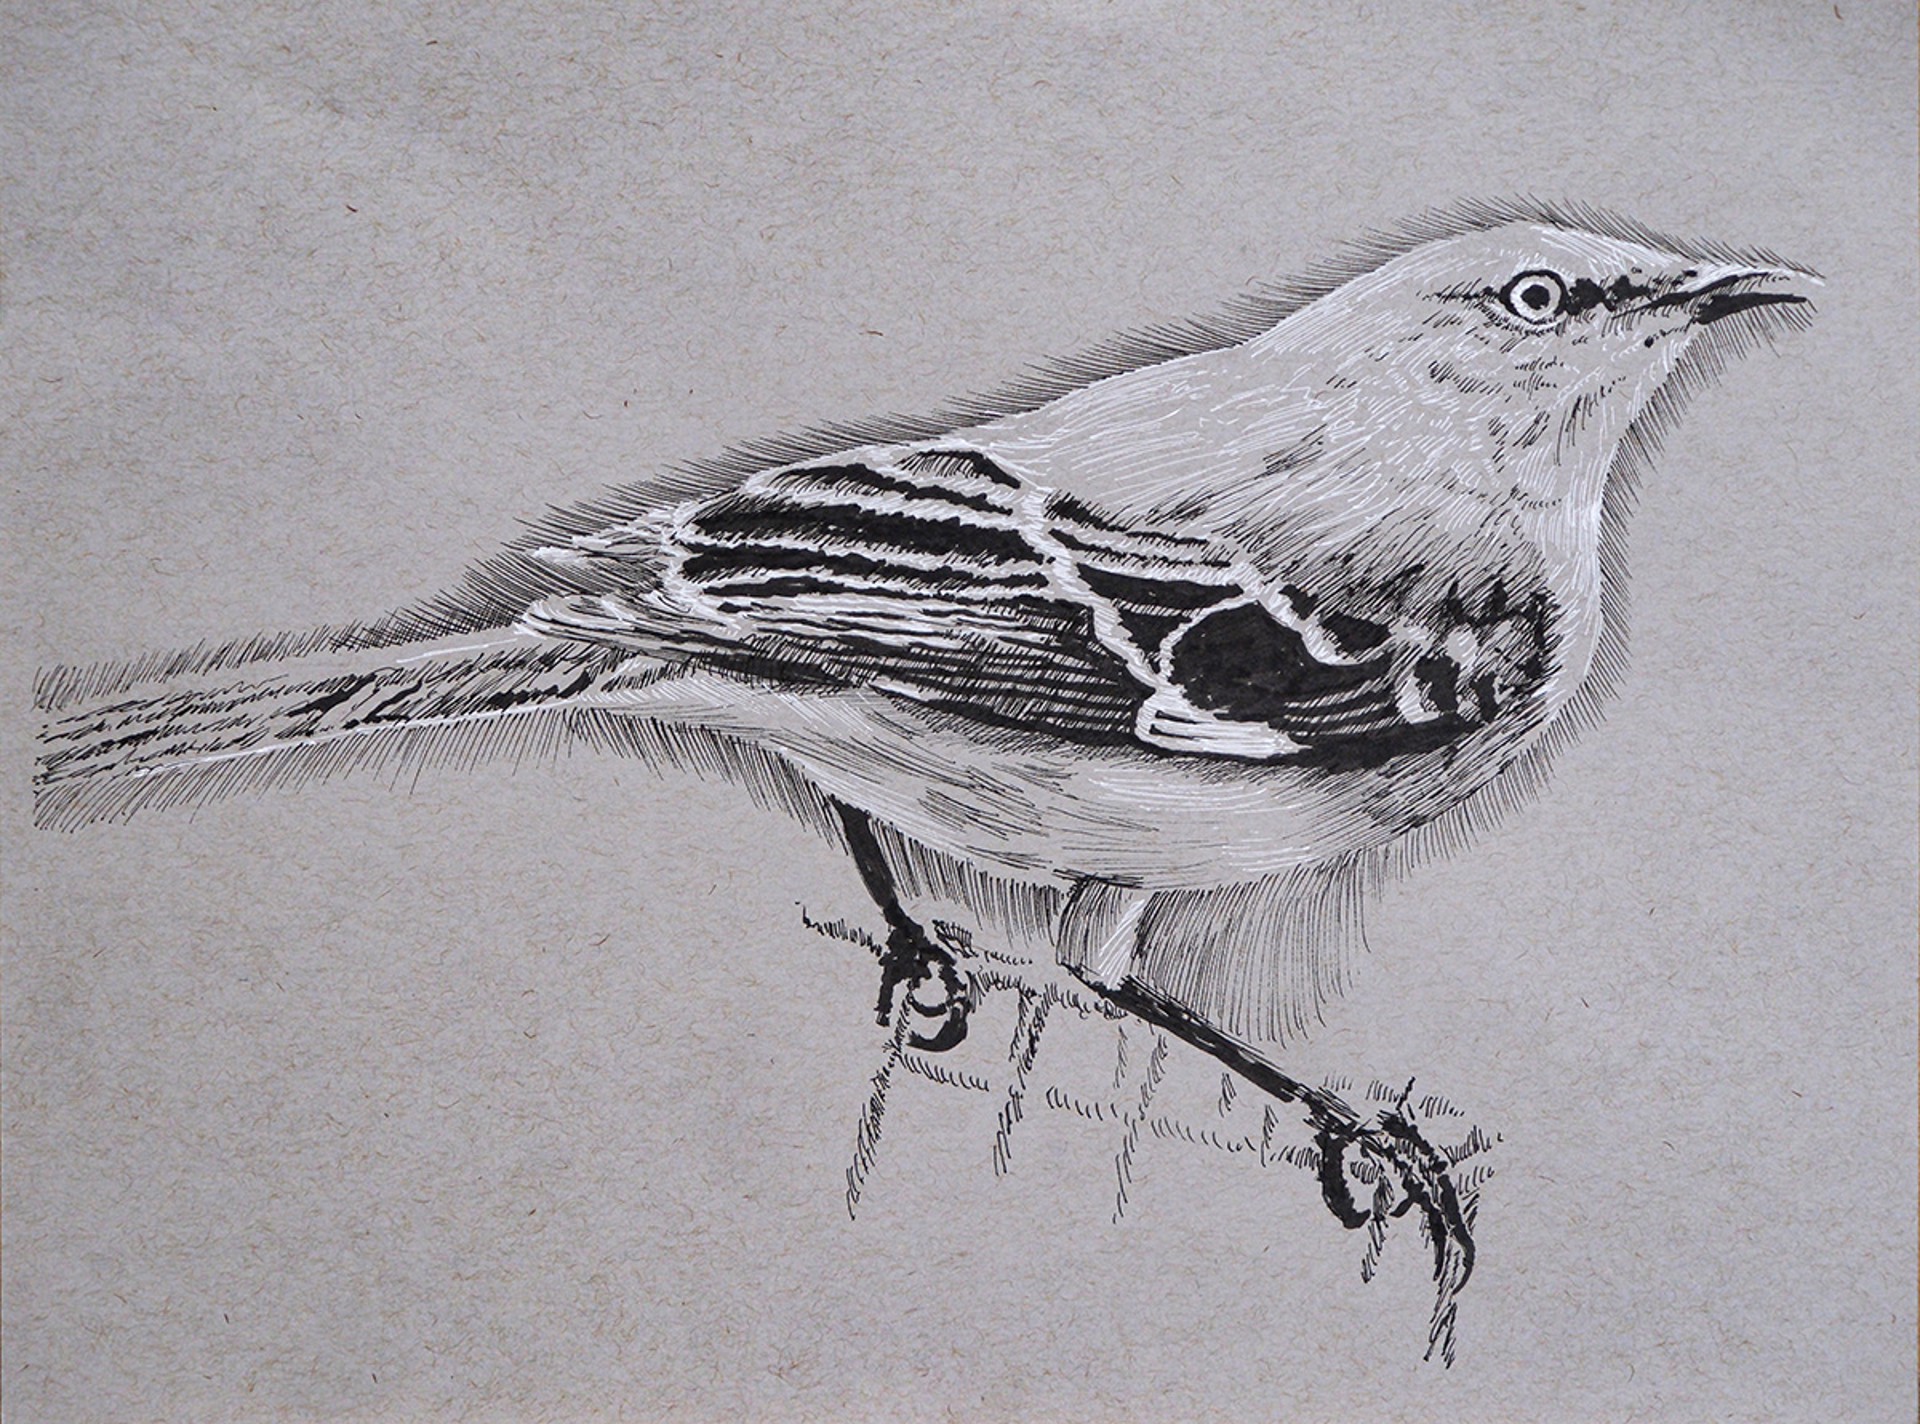 Mocking Bird by Ed Ford